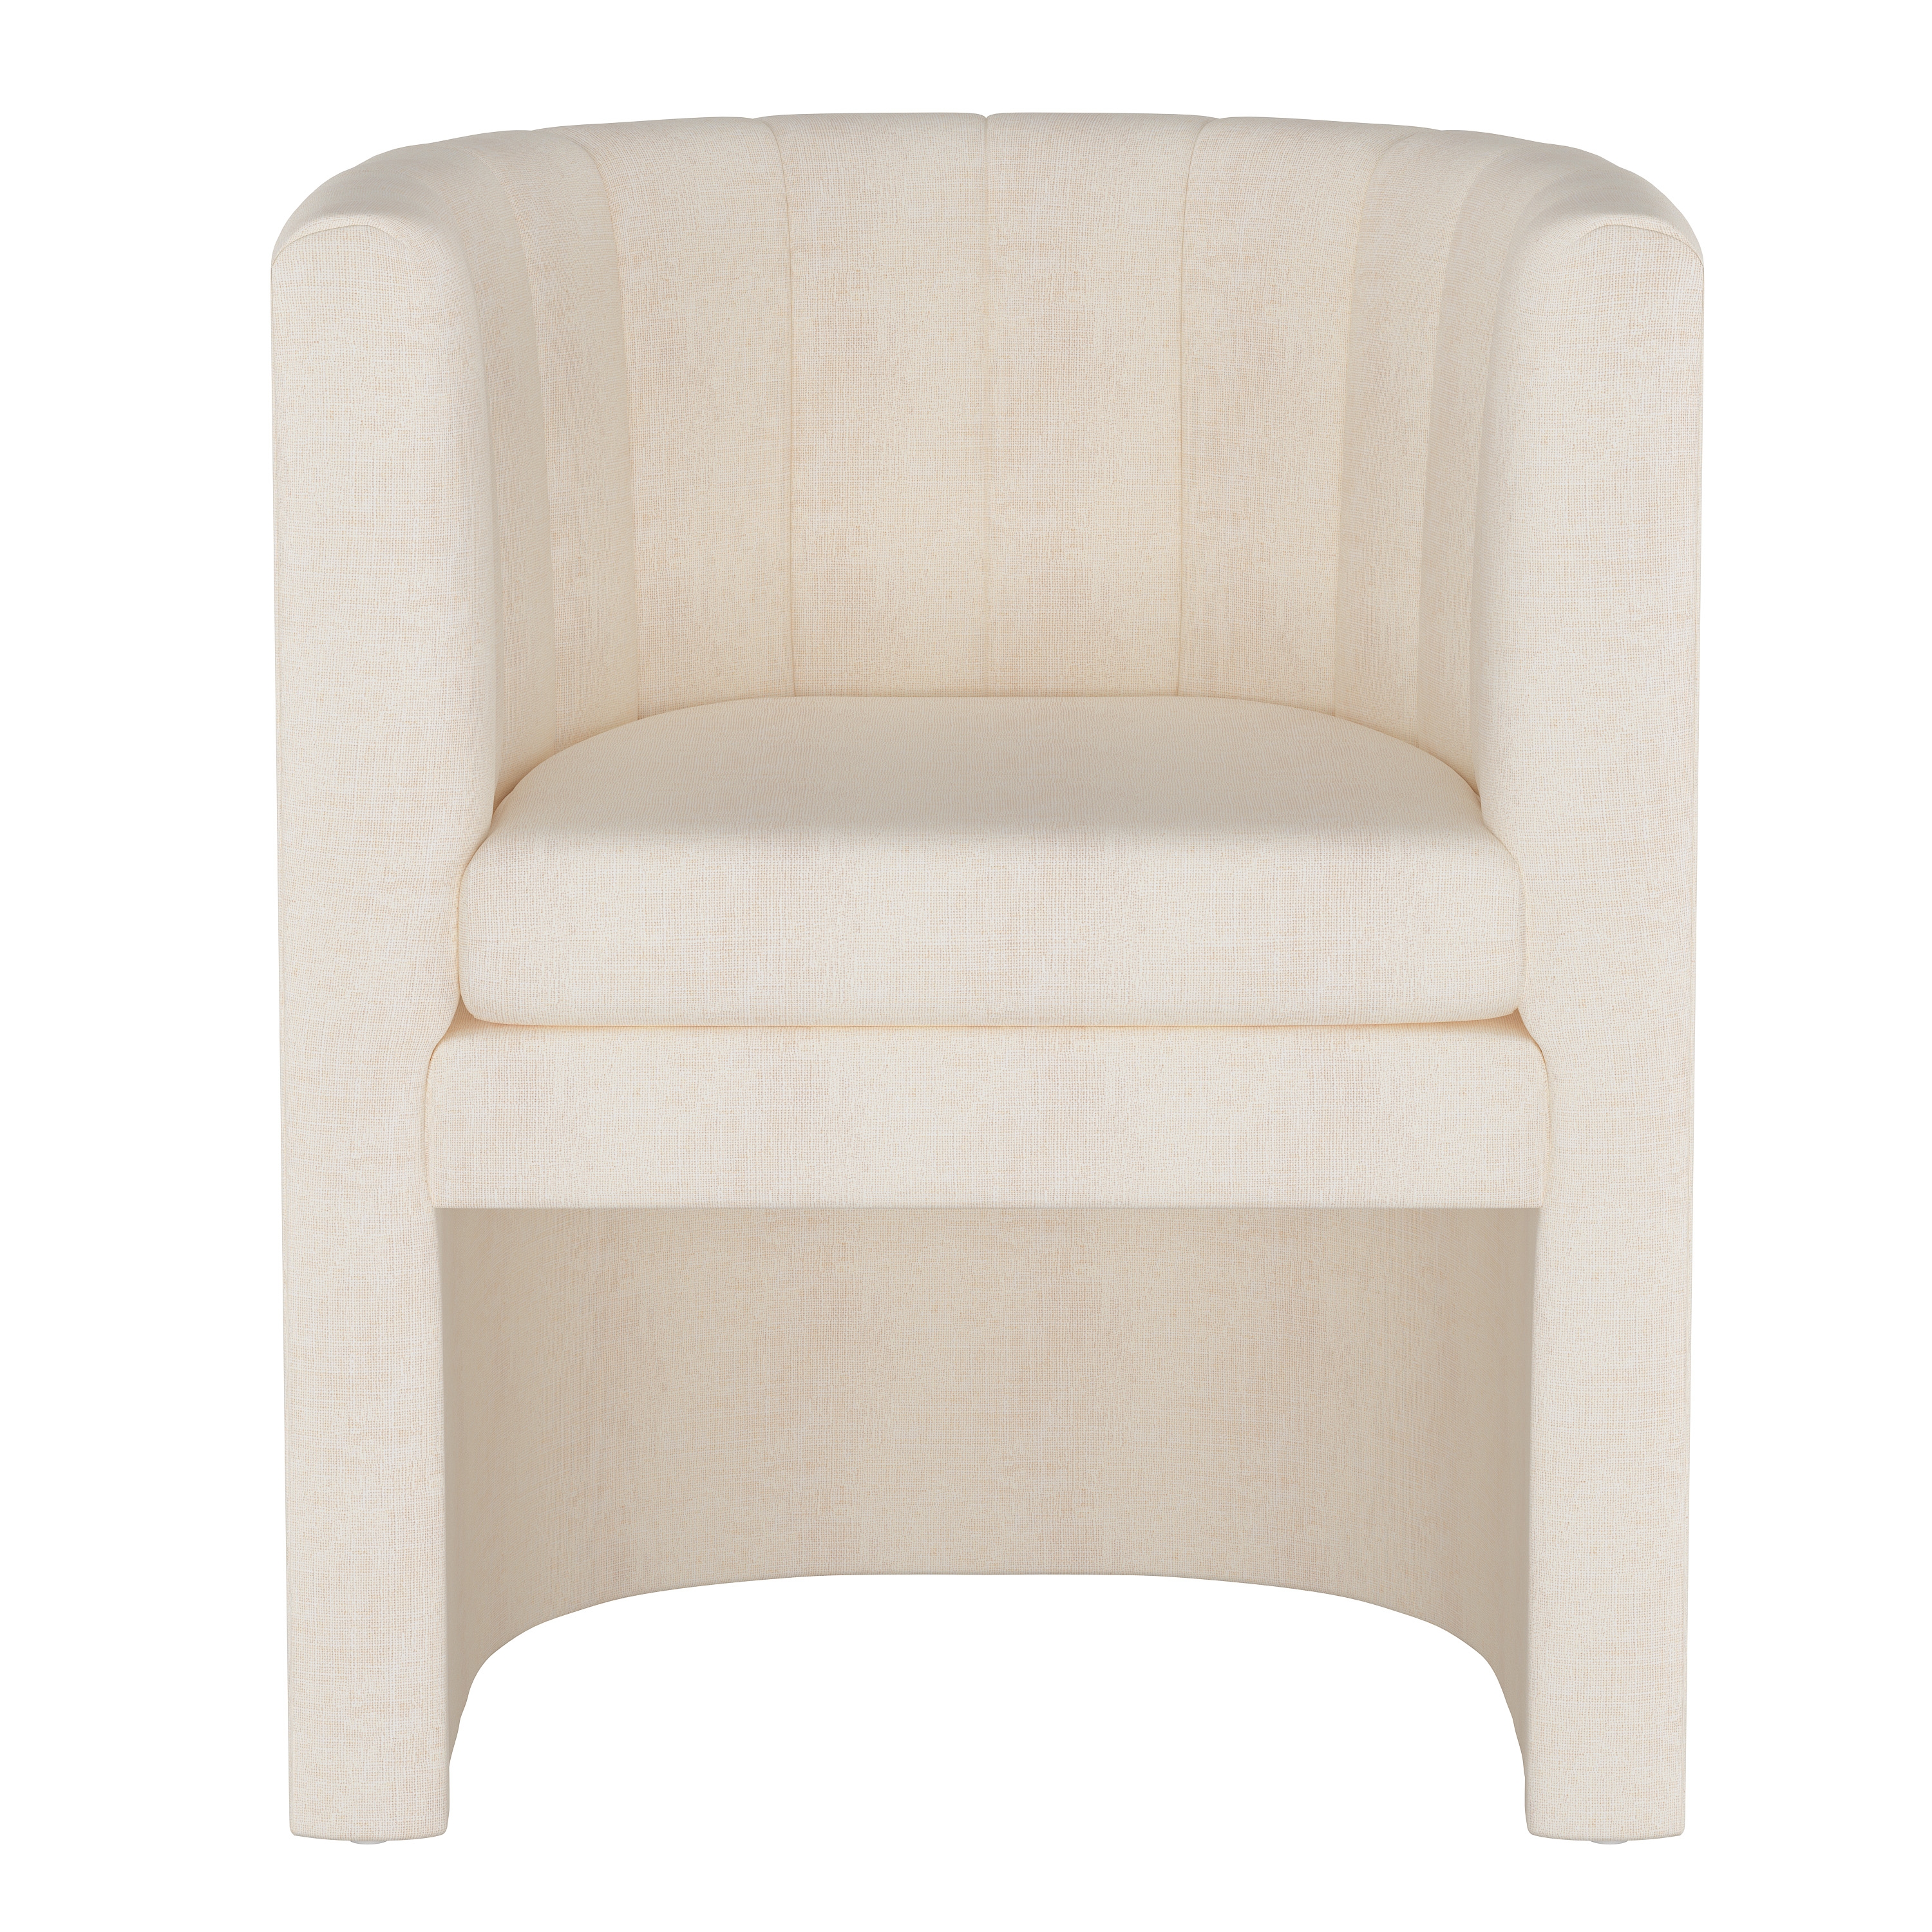 Wellshire Chair, White Linen - Image 1